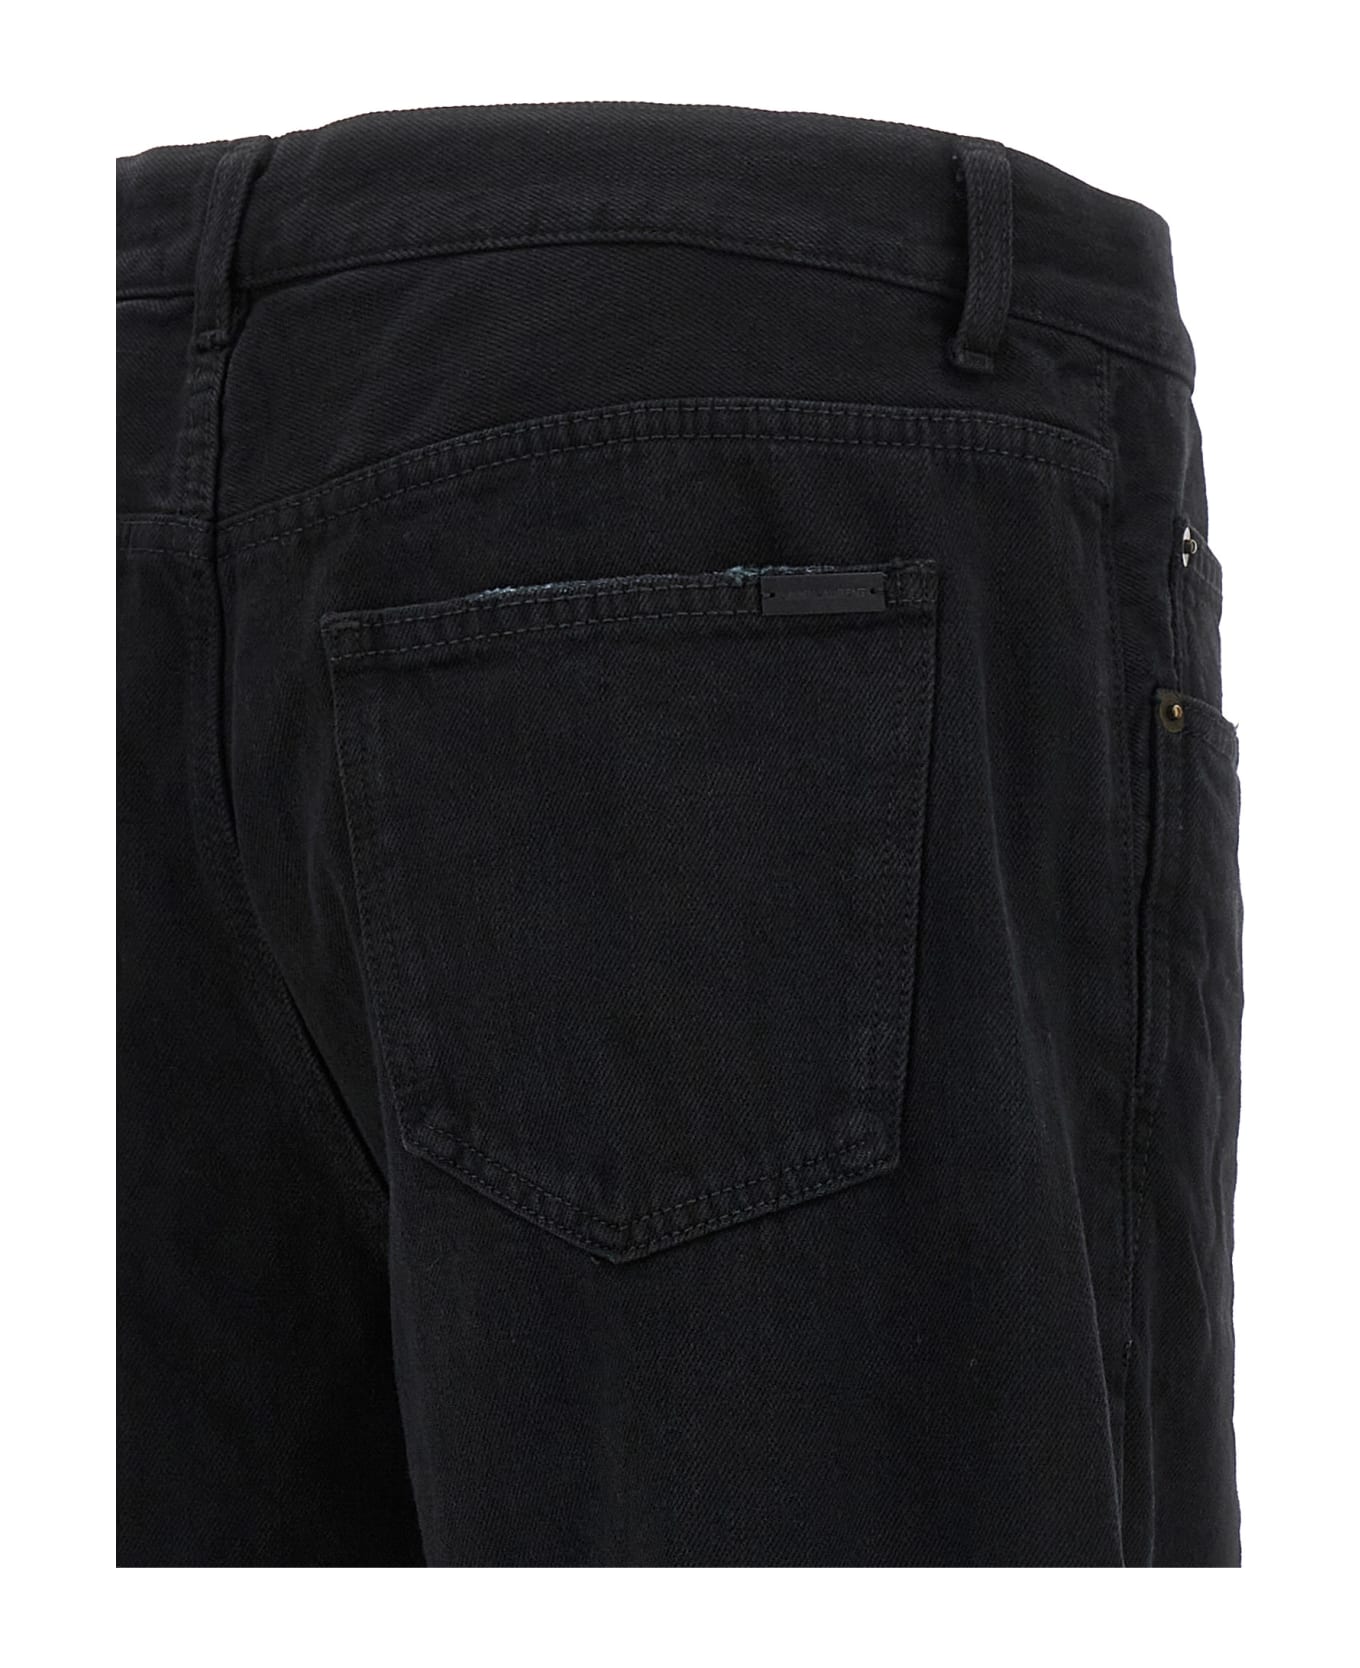 Saint Laurent Extreme Baggy Jeans - CARBON BLACK デニム